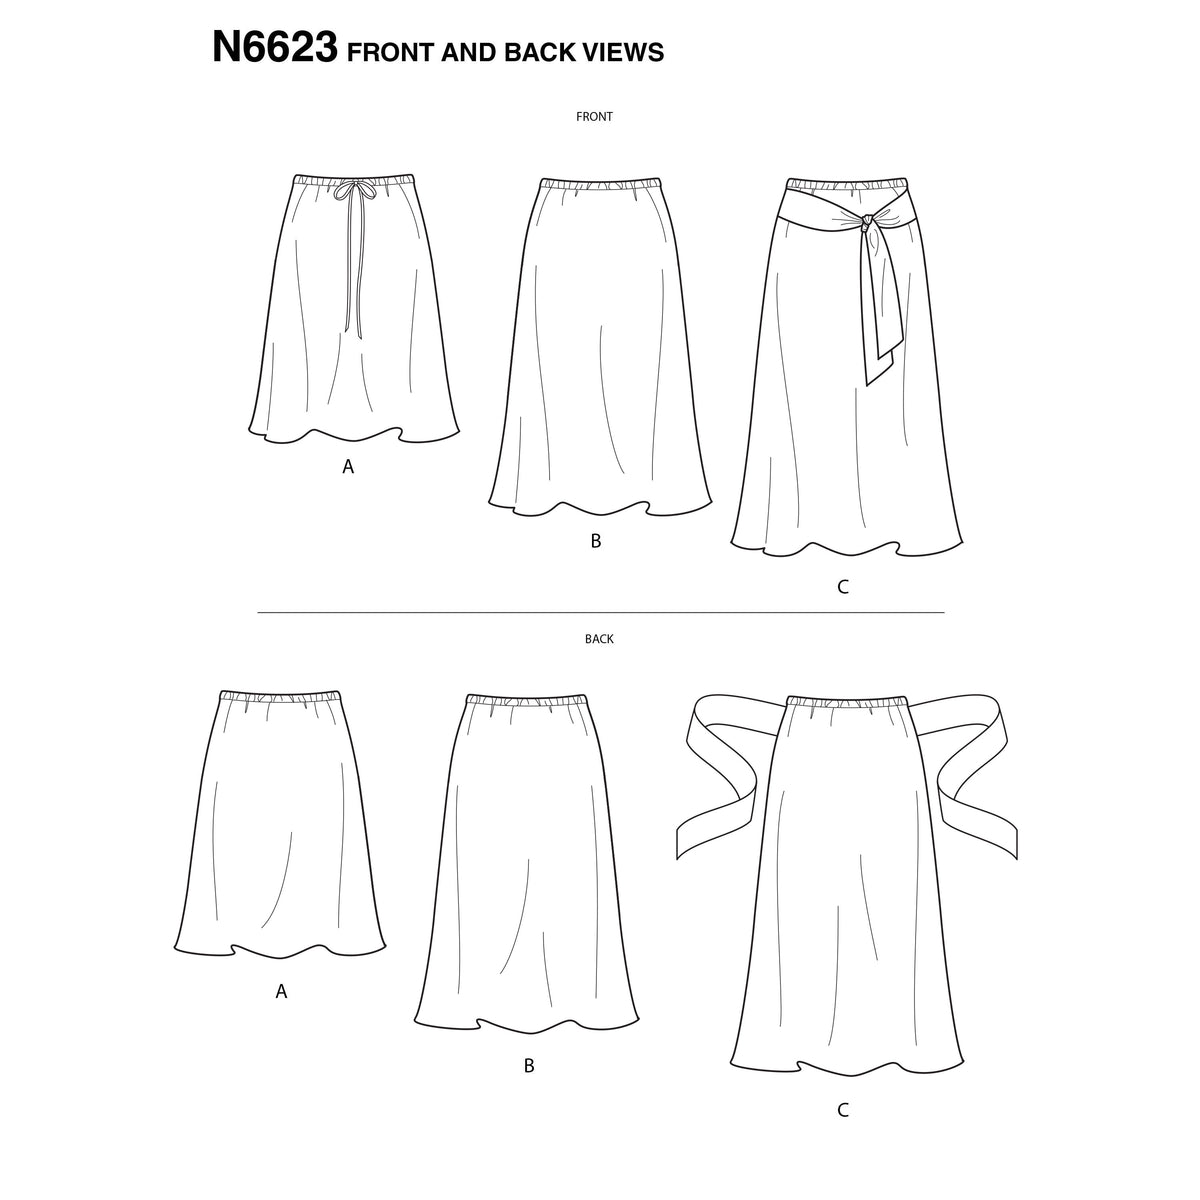 6623 New Look Sewing Pattern N6623 Misses' Skirt In Three Lengths